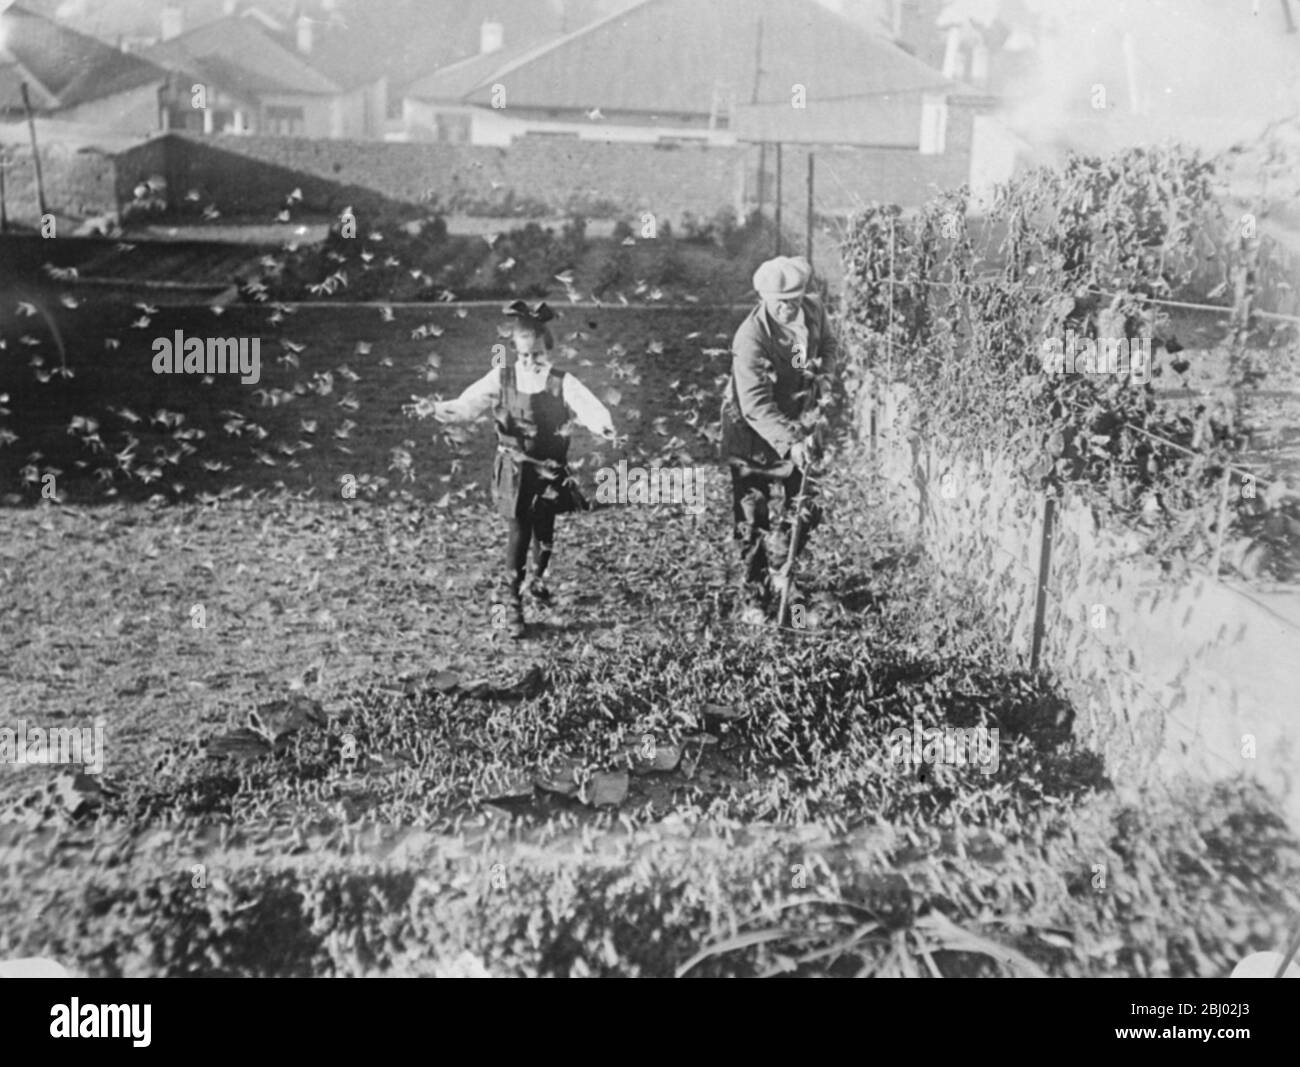 La lucha de los agricultores con enormes nubes de langostas . Cultivos florecientes destruidos en el Transvaal Occidental - langostas aferradas a las paredes de una casa en Johannesburgo - 22 de mayo de 1923 Foto de stock